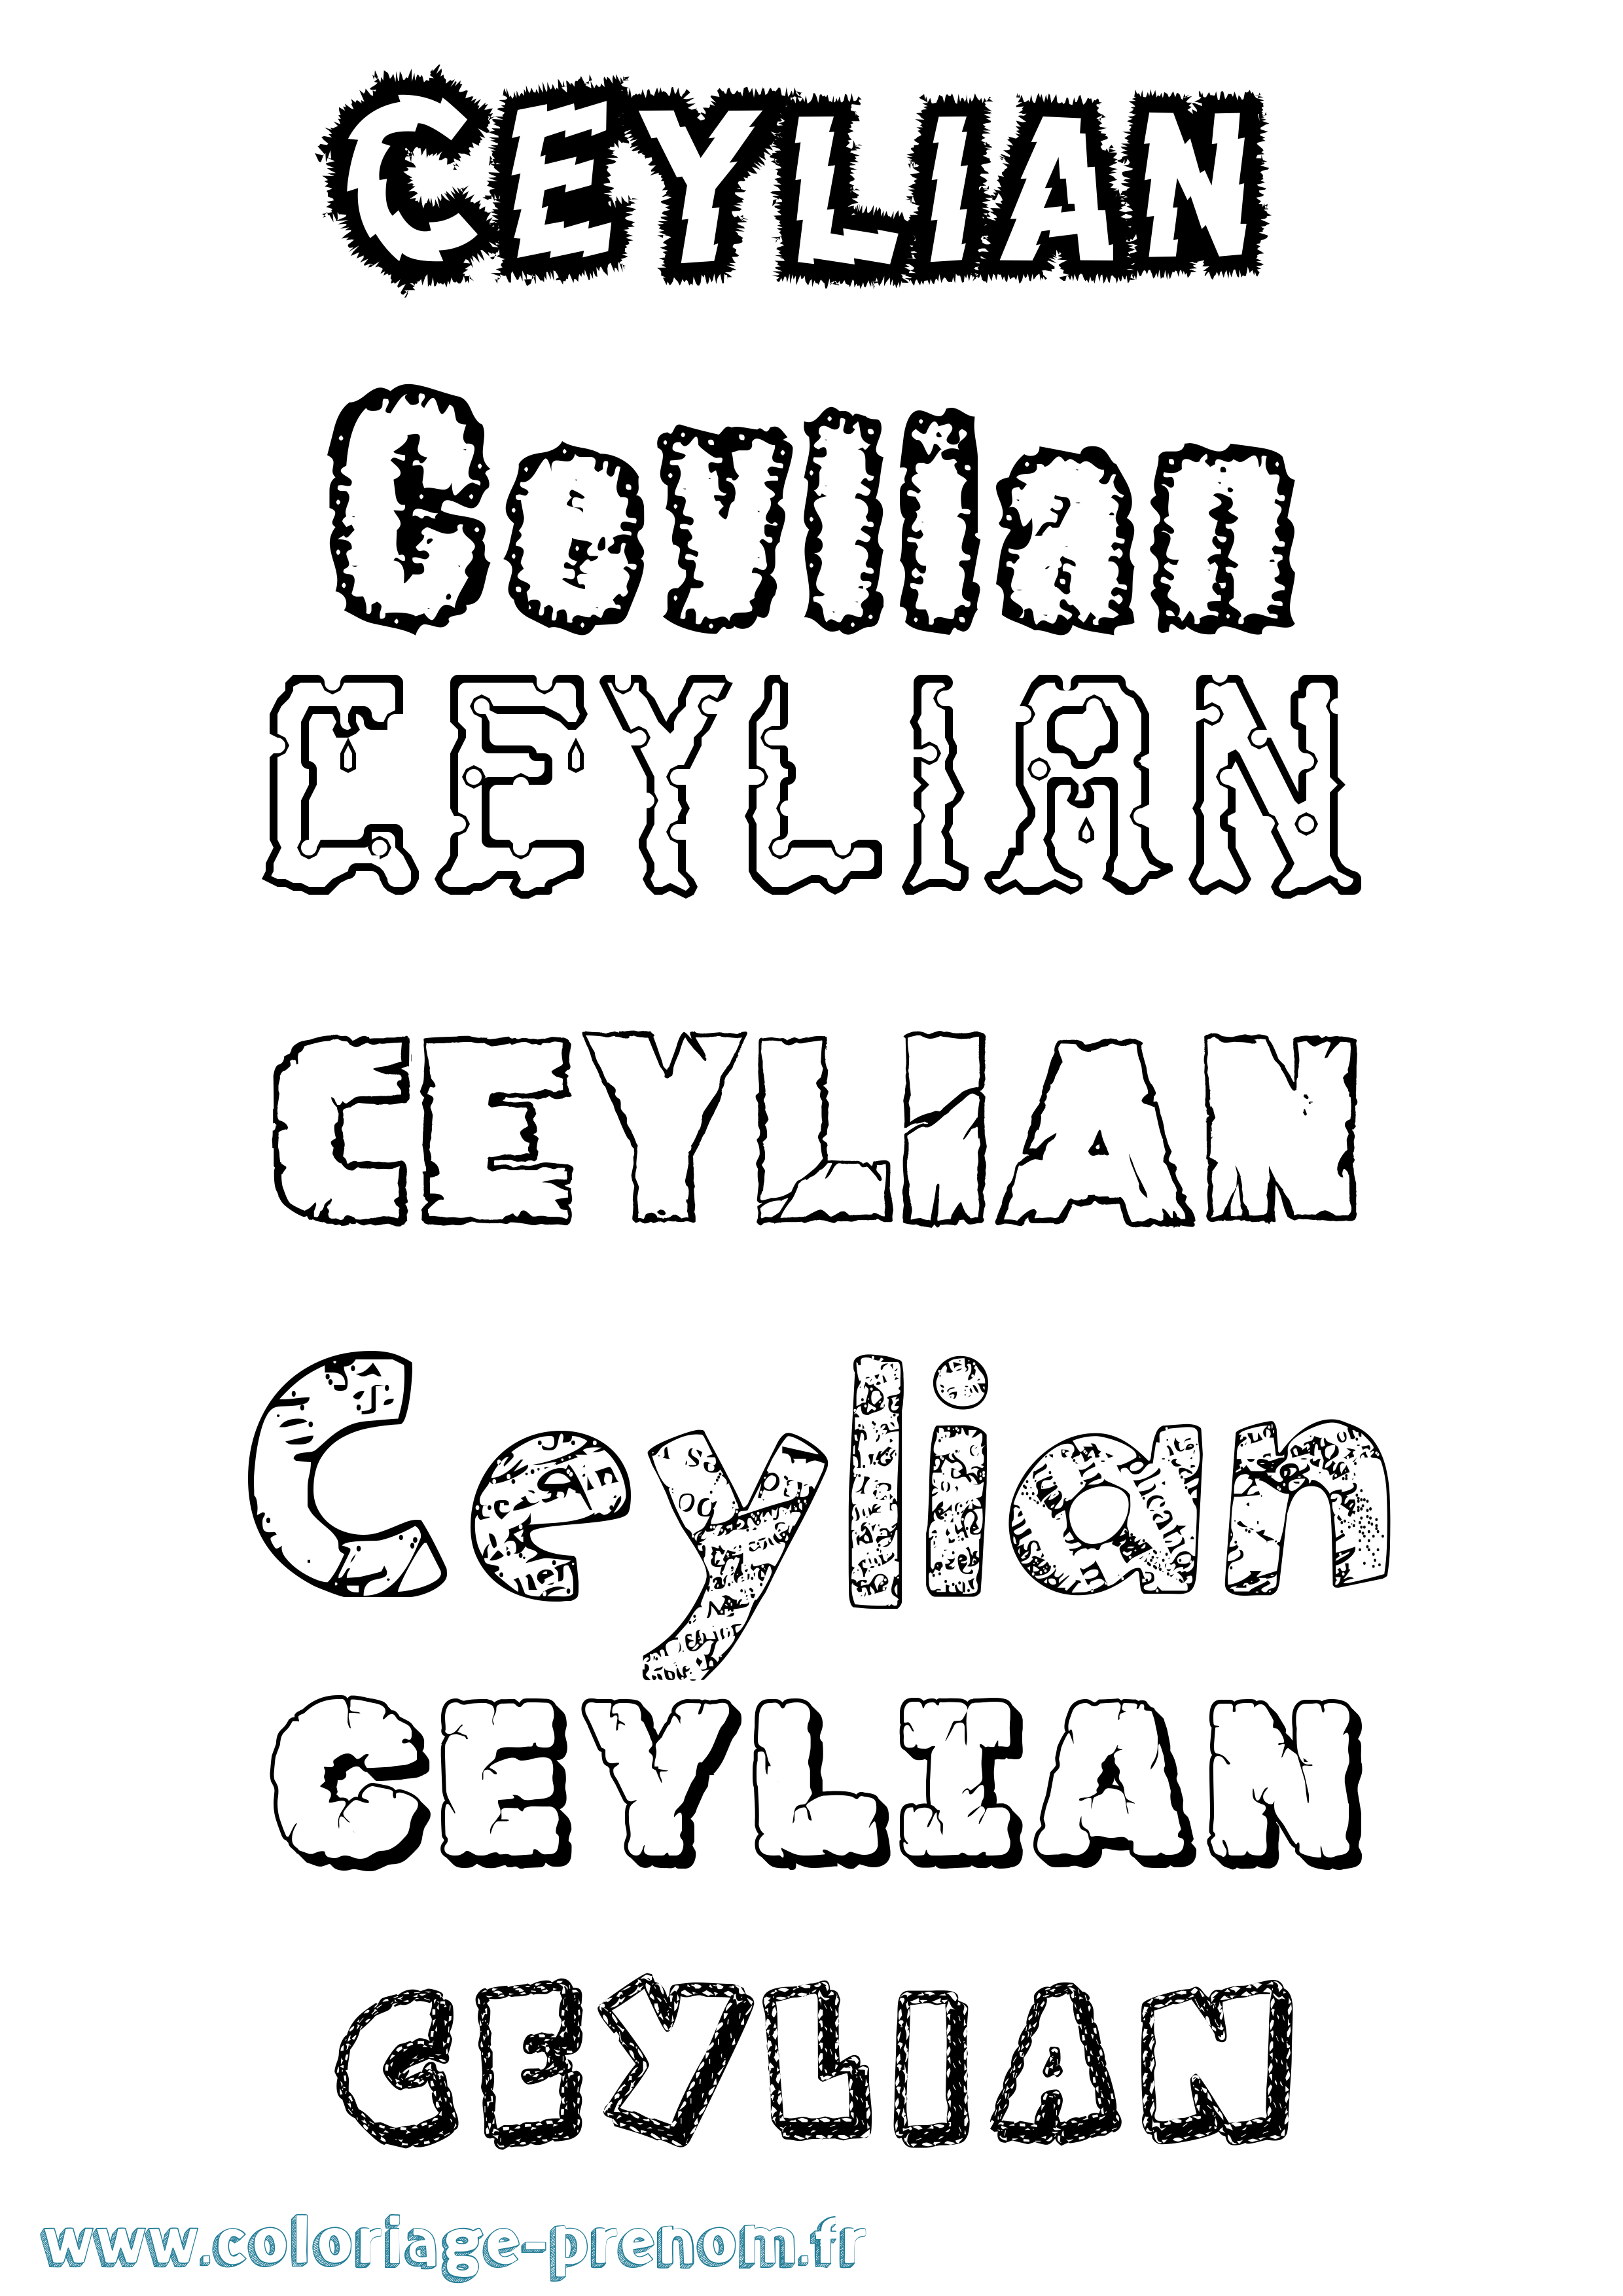 Coloriage prénom Ceylian Destructuré